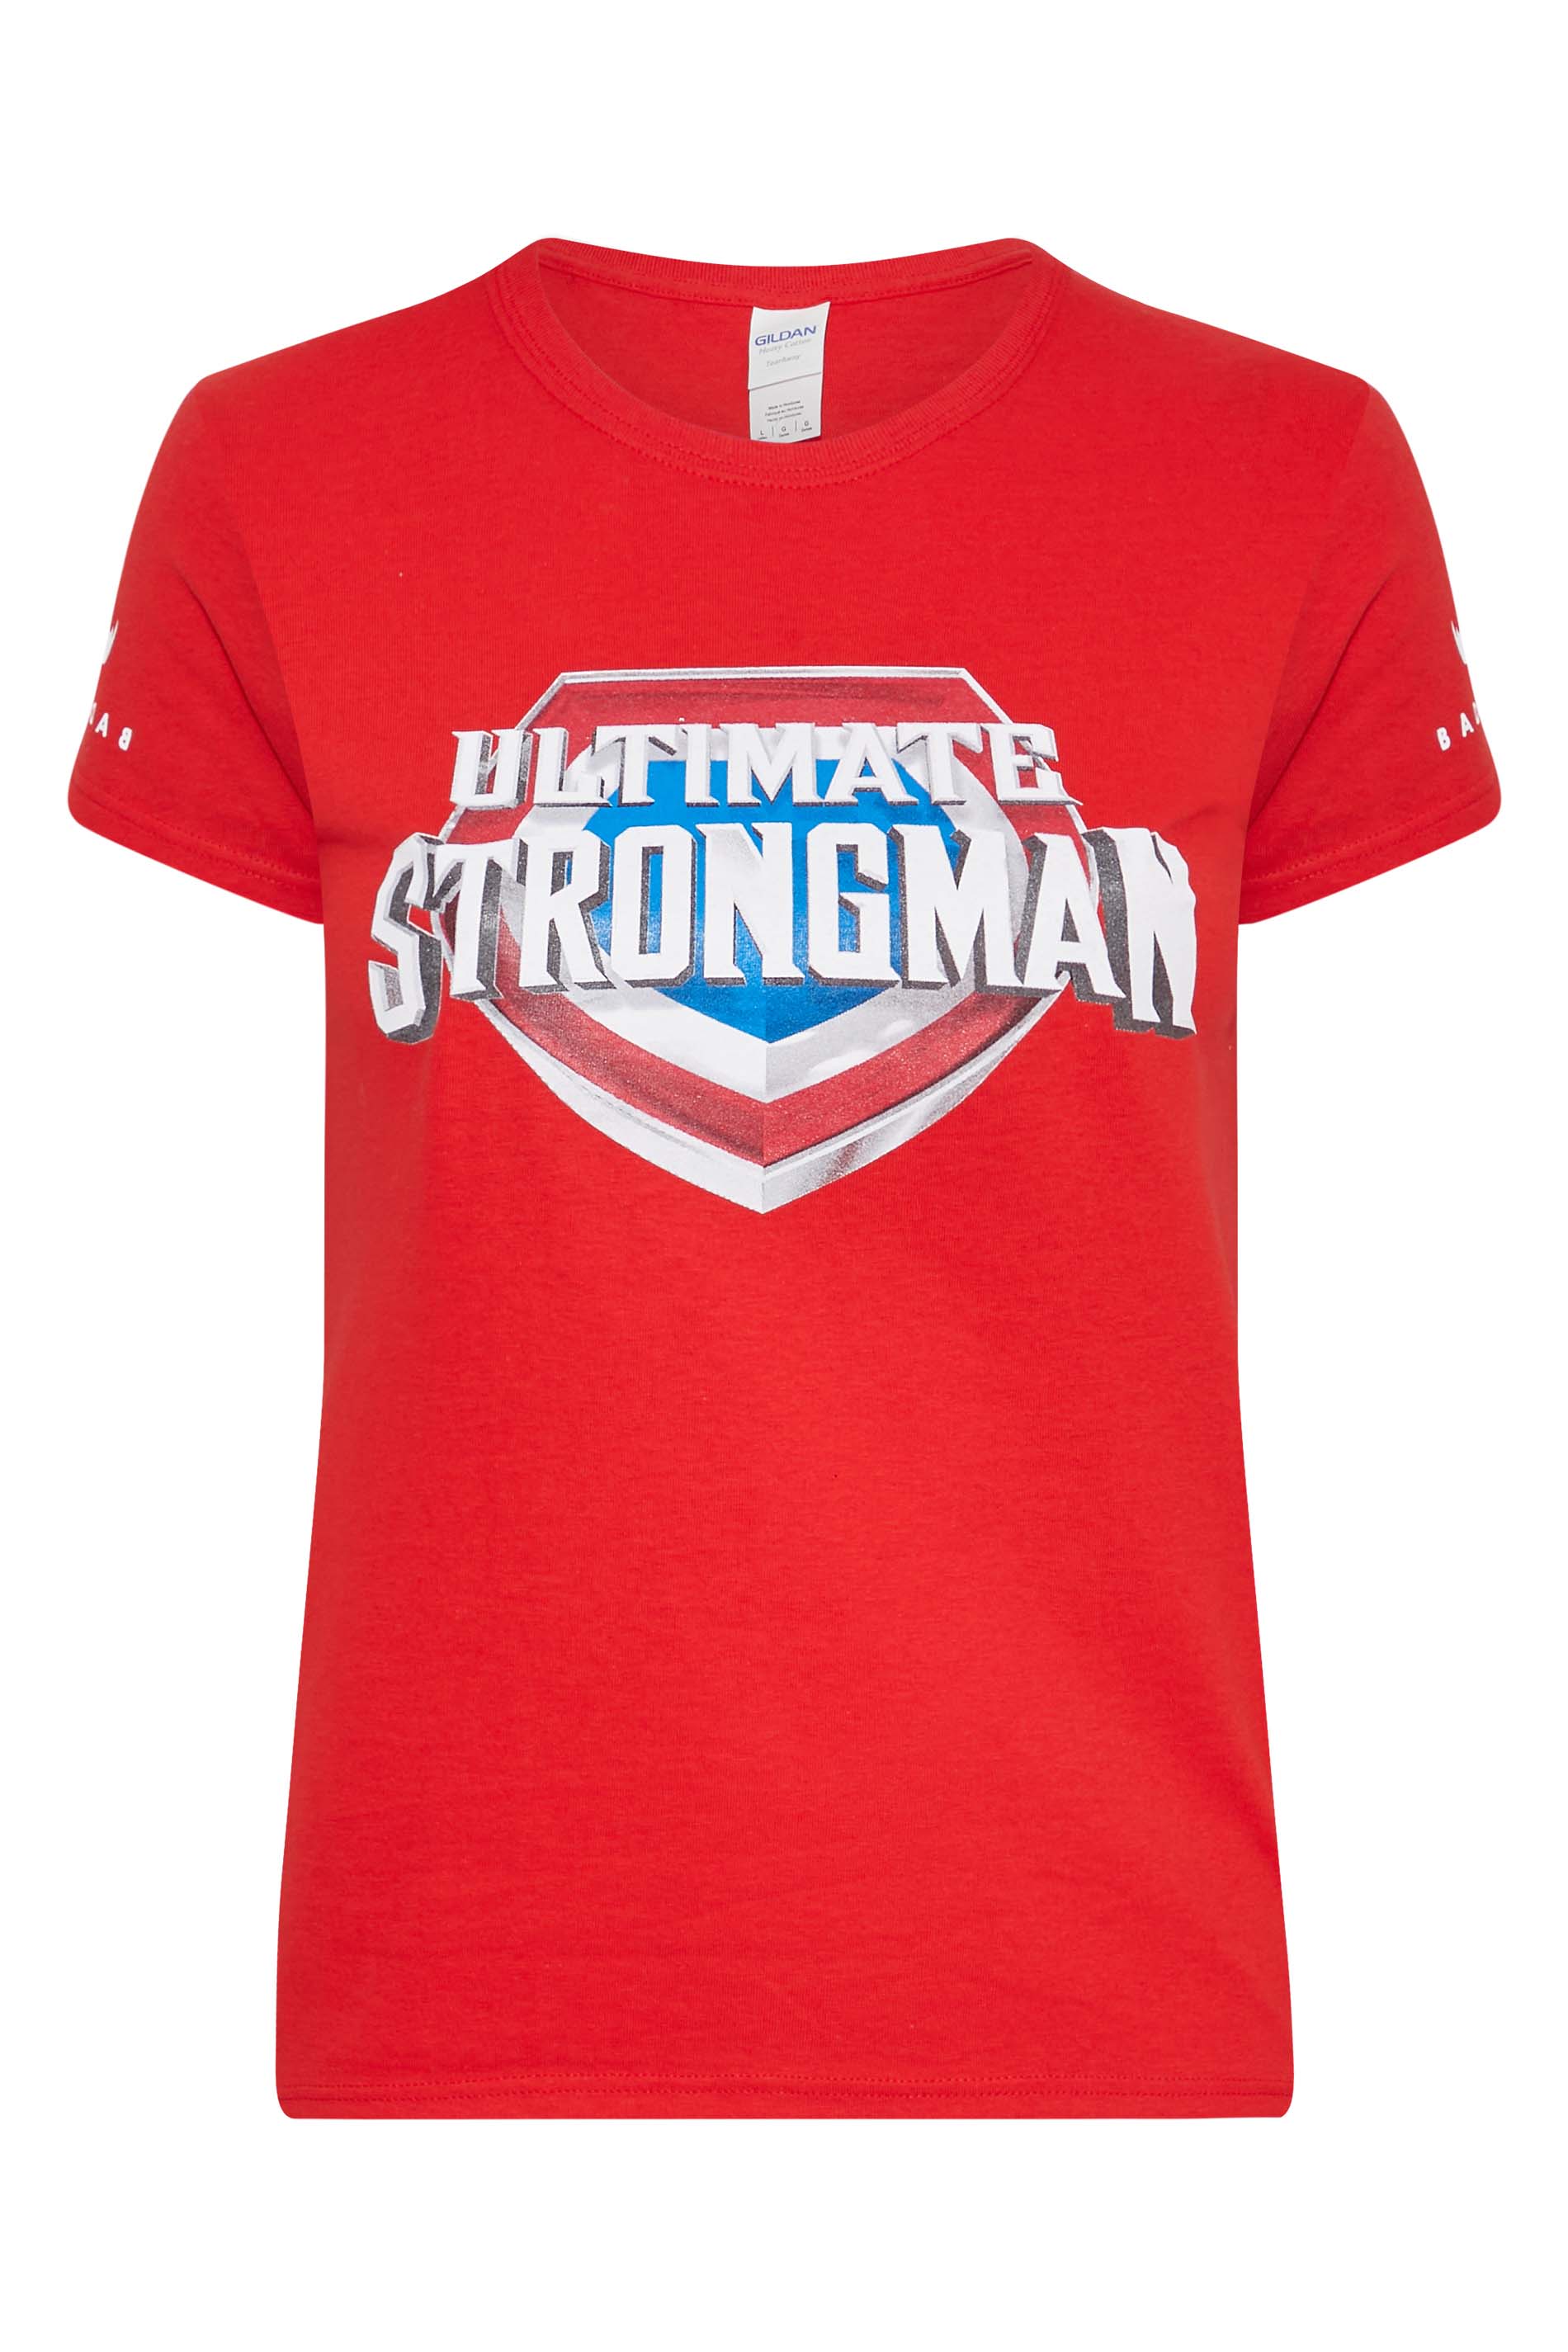 BadRhino Women's Red Ultimate Strongman T-Shirt | BadRhino 1